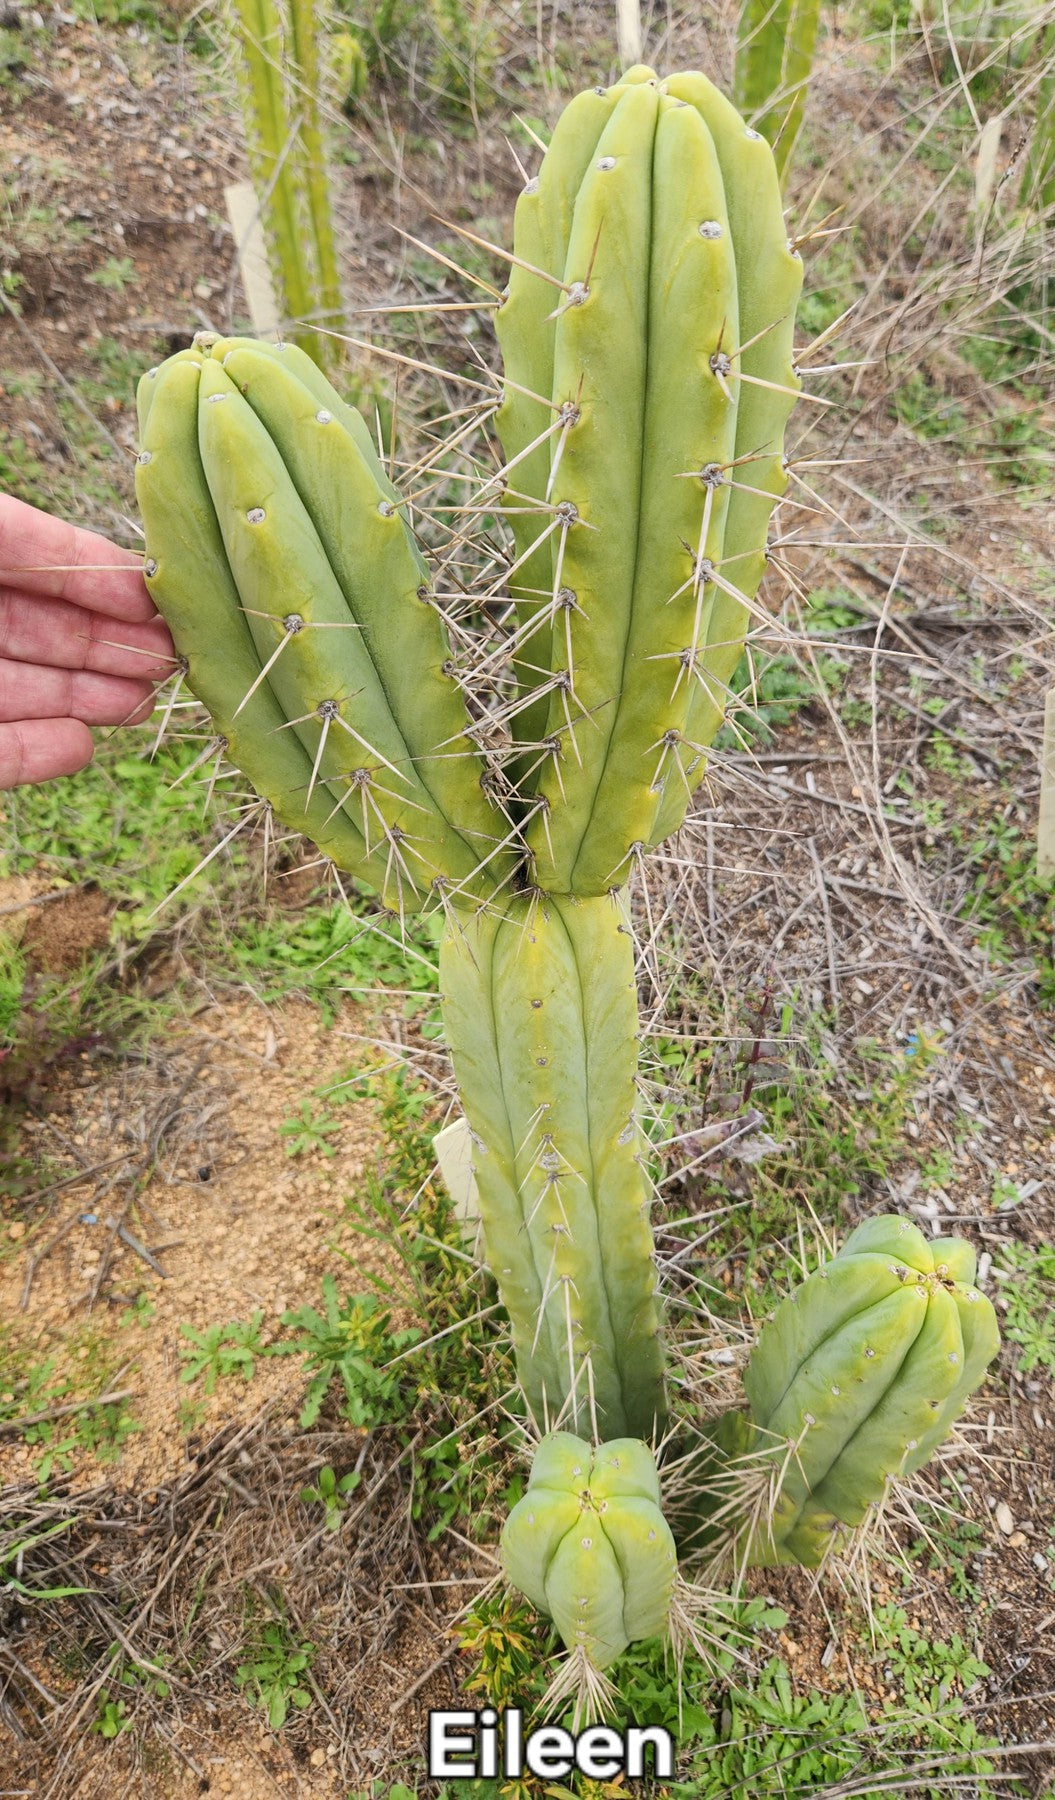 #EC19 EXACT Trichocereus Bridgesii "Eileen" Cactus Cutting 8-10"-Cactus - Large - Exact-The Succulent Source